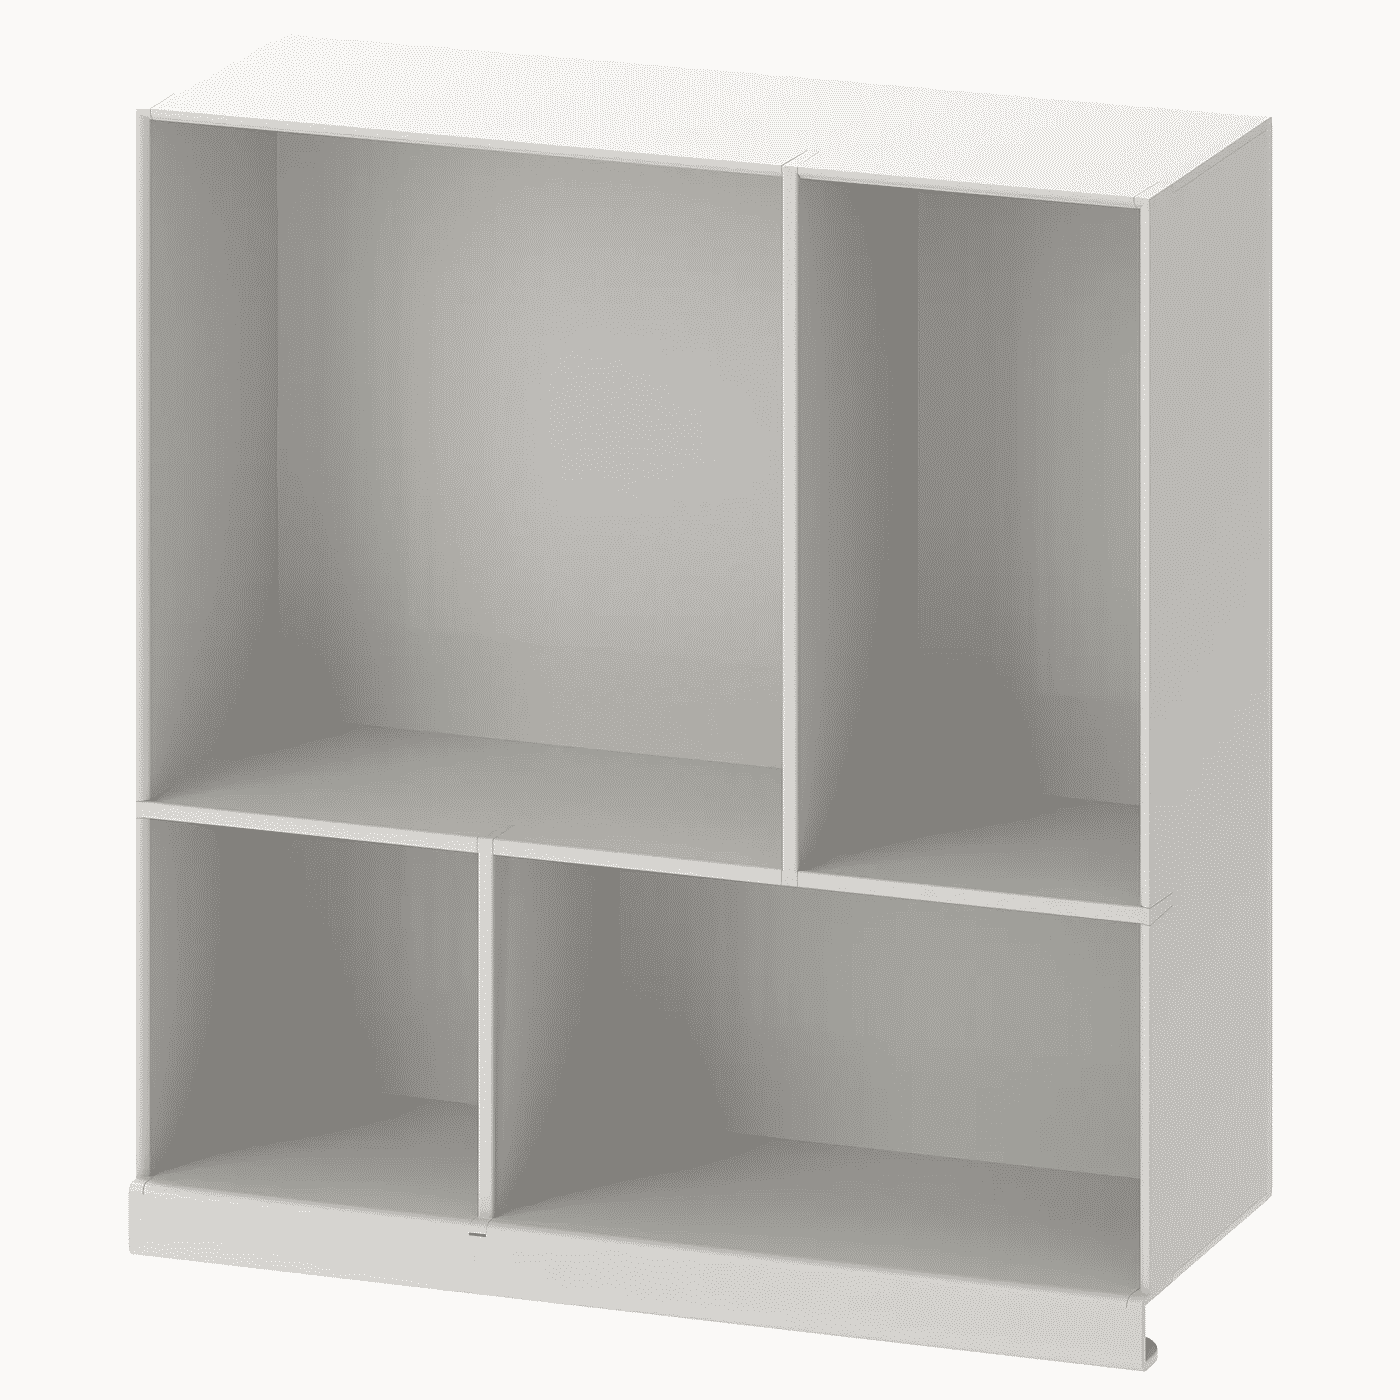 KALLAX Shelf insert, light gray